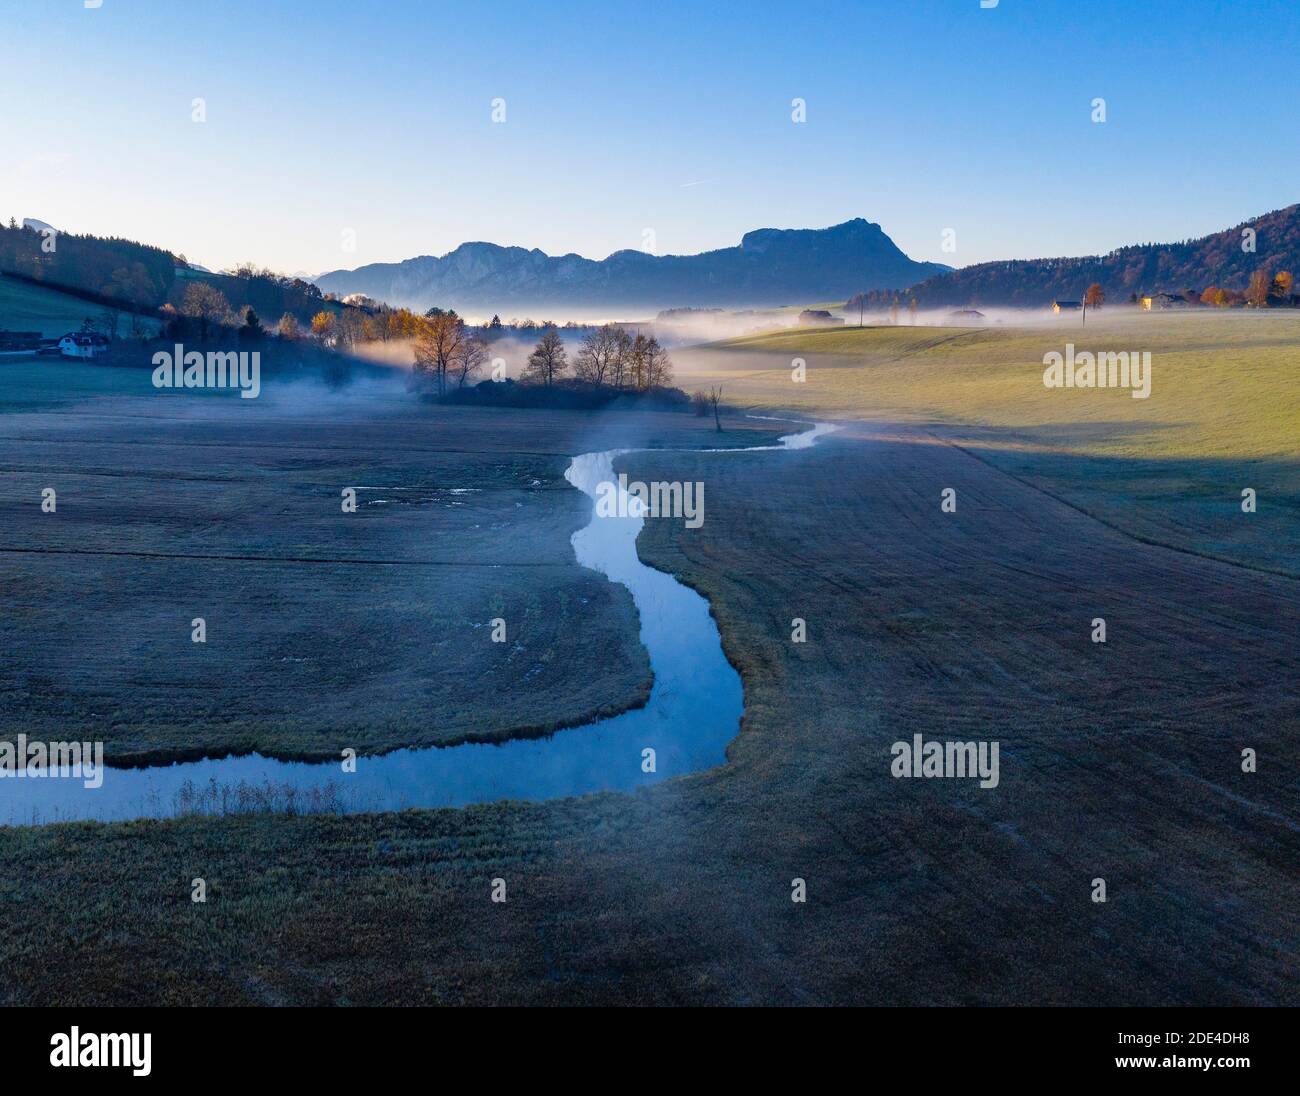 Deflusso della Zellerache dal lago Irrsee con vista sulla Mondseeland, nebbia a terra, dall'alto, prato bagnato, colpo di drone, vista aerea Foto Stock